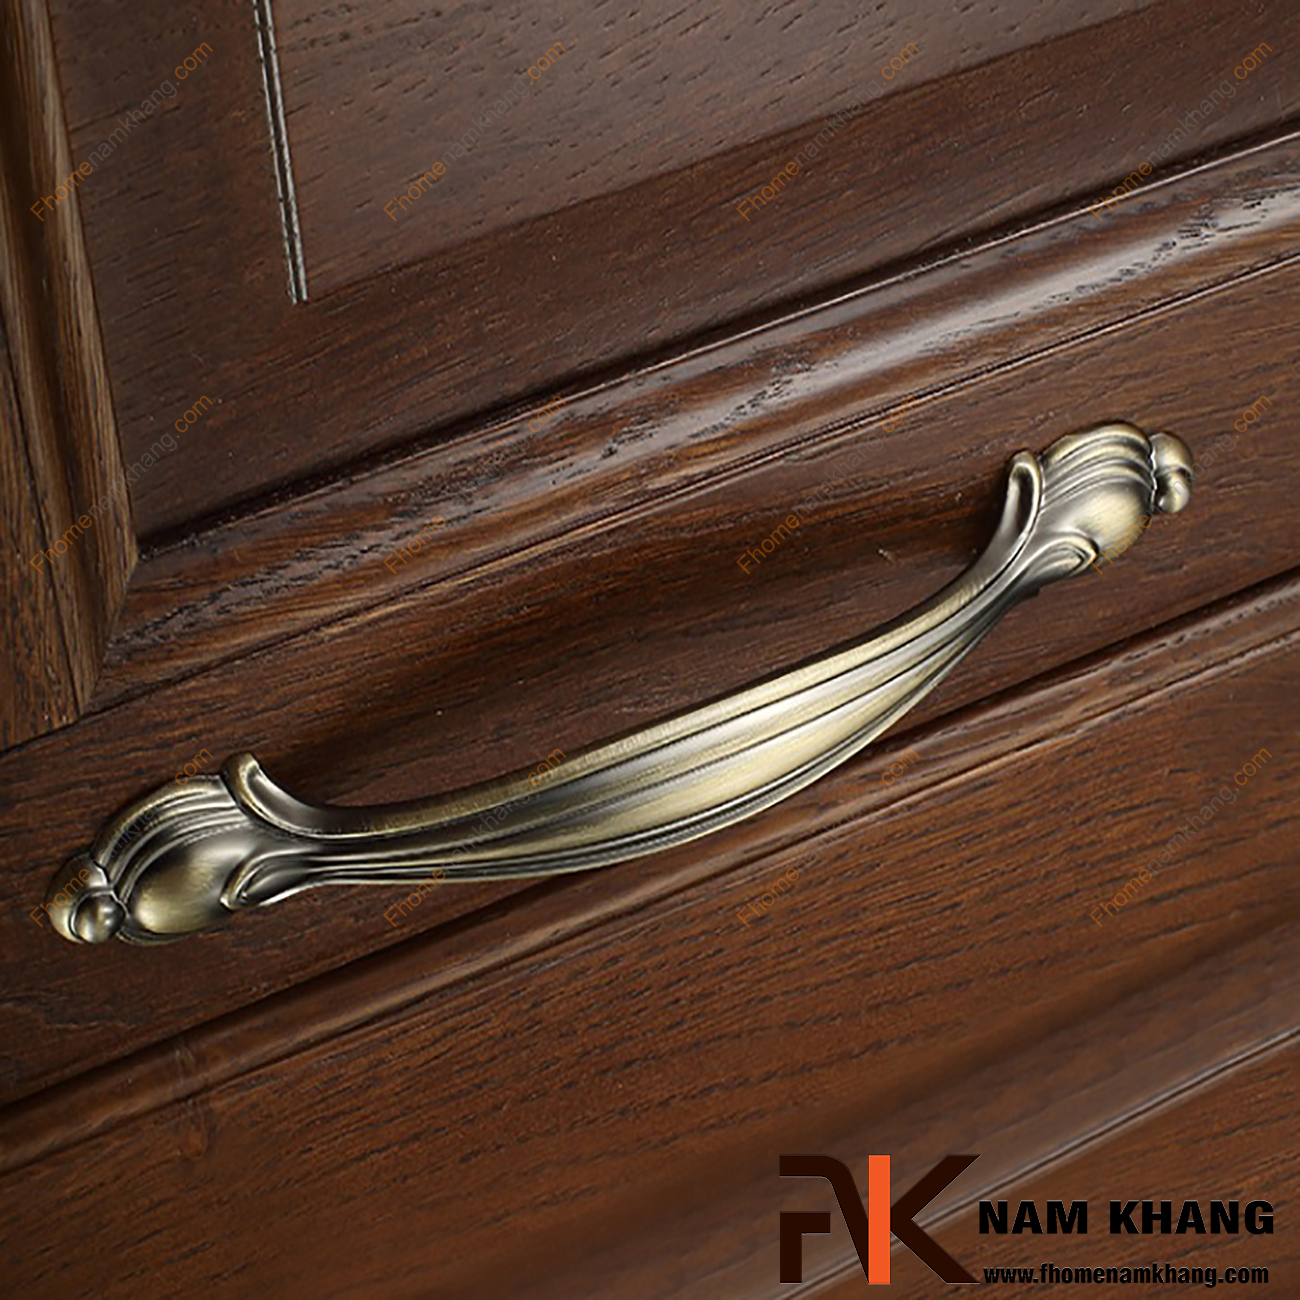 Tay nắm cửa tủ cổ điển màu rêu NK154-128R được thiết kế với phong cách cổ điển sang trọng với họa tiết đơn giản nhưng được gia công với độ cong mượt cao tạo cảm giác thoải mái và chắc chắn khi cầm nắm.